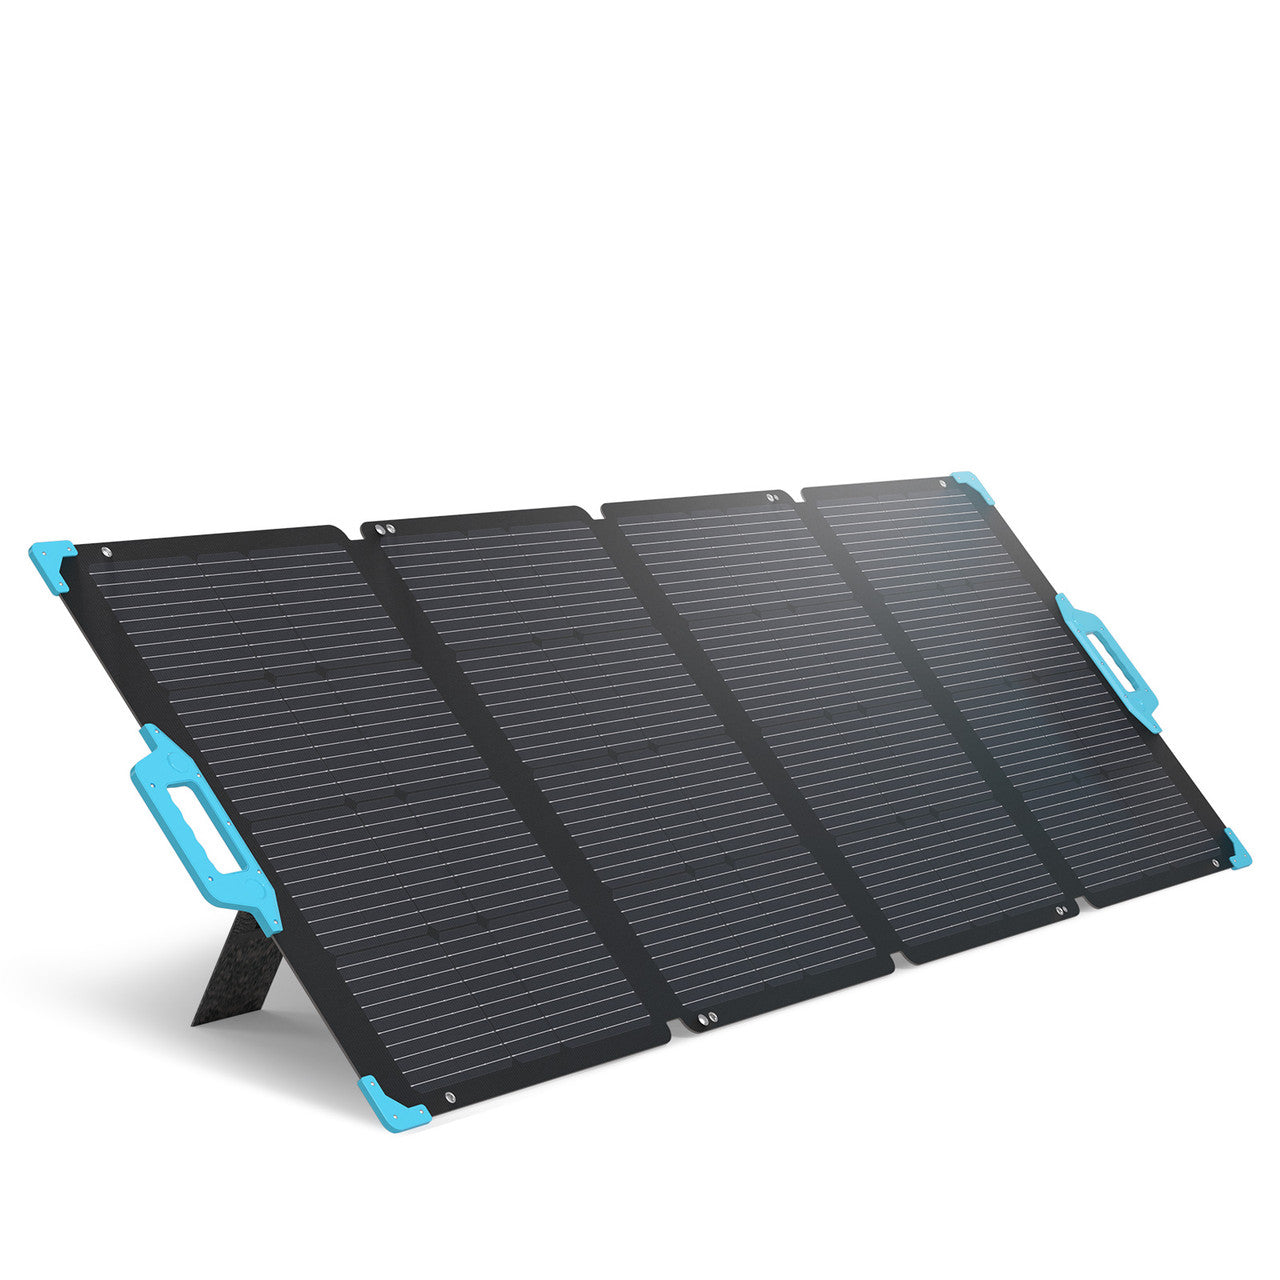 E.FLEX 220 Portable Solar Panel Portable Solar Panel